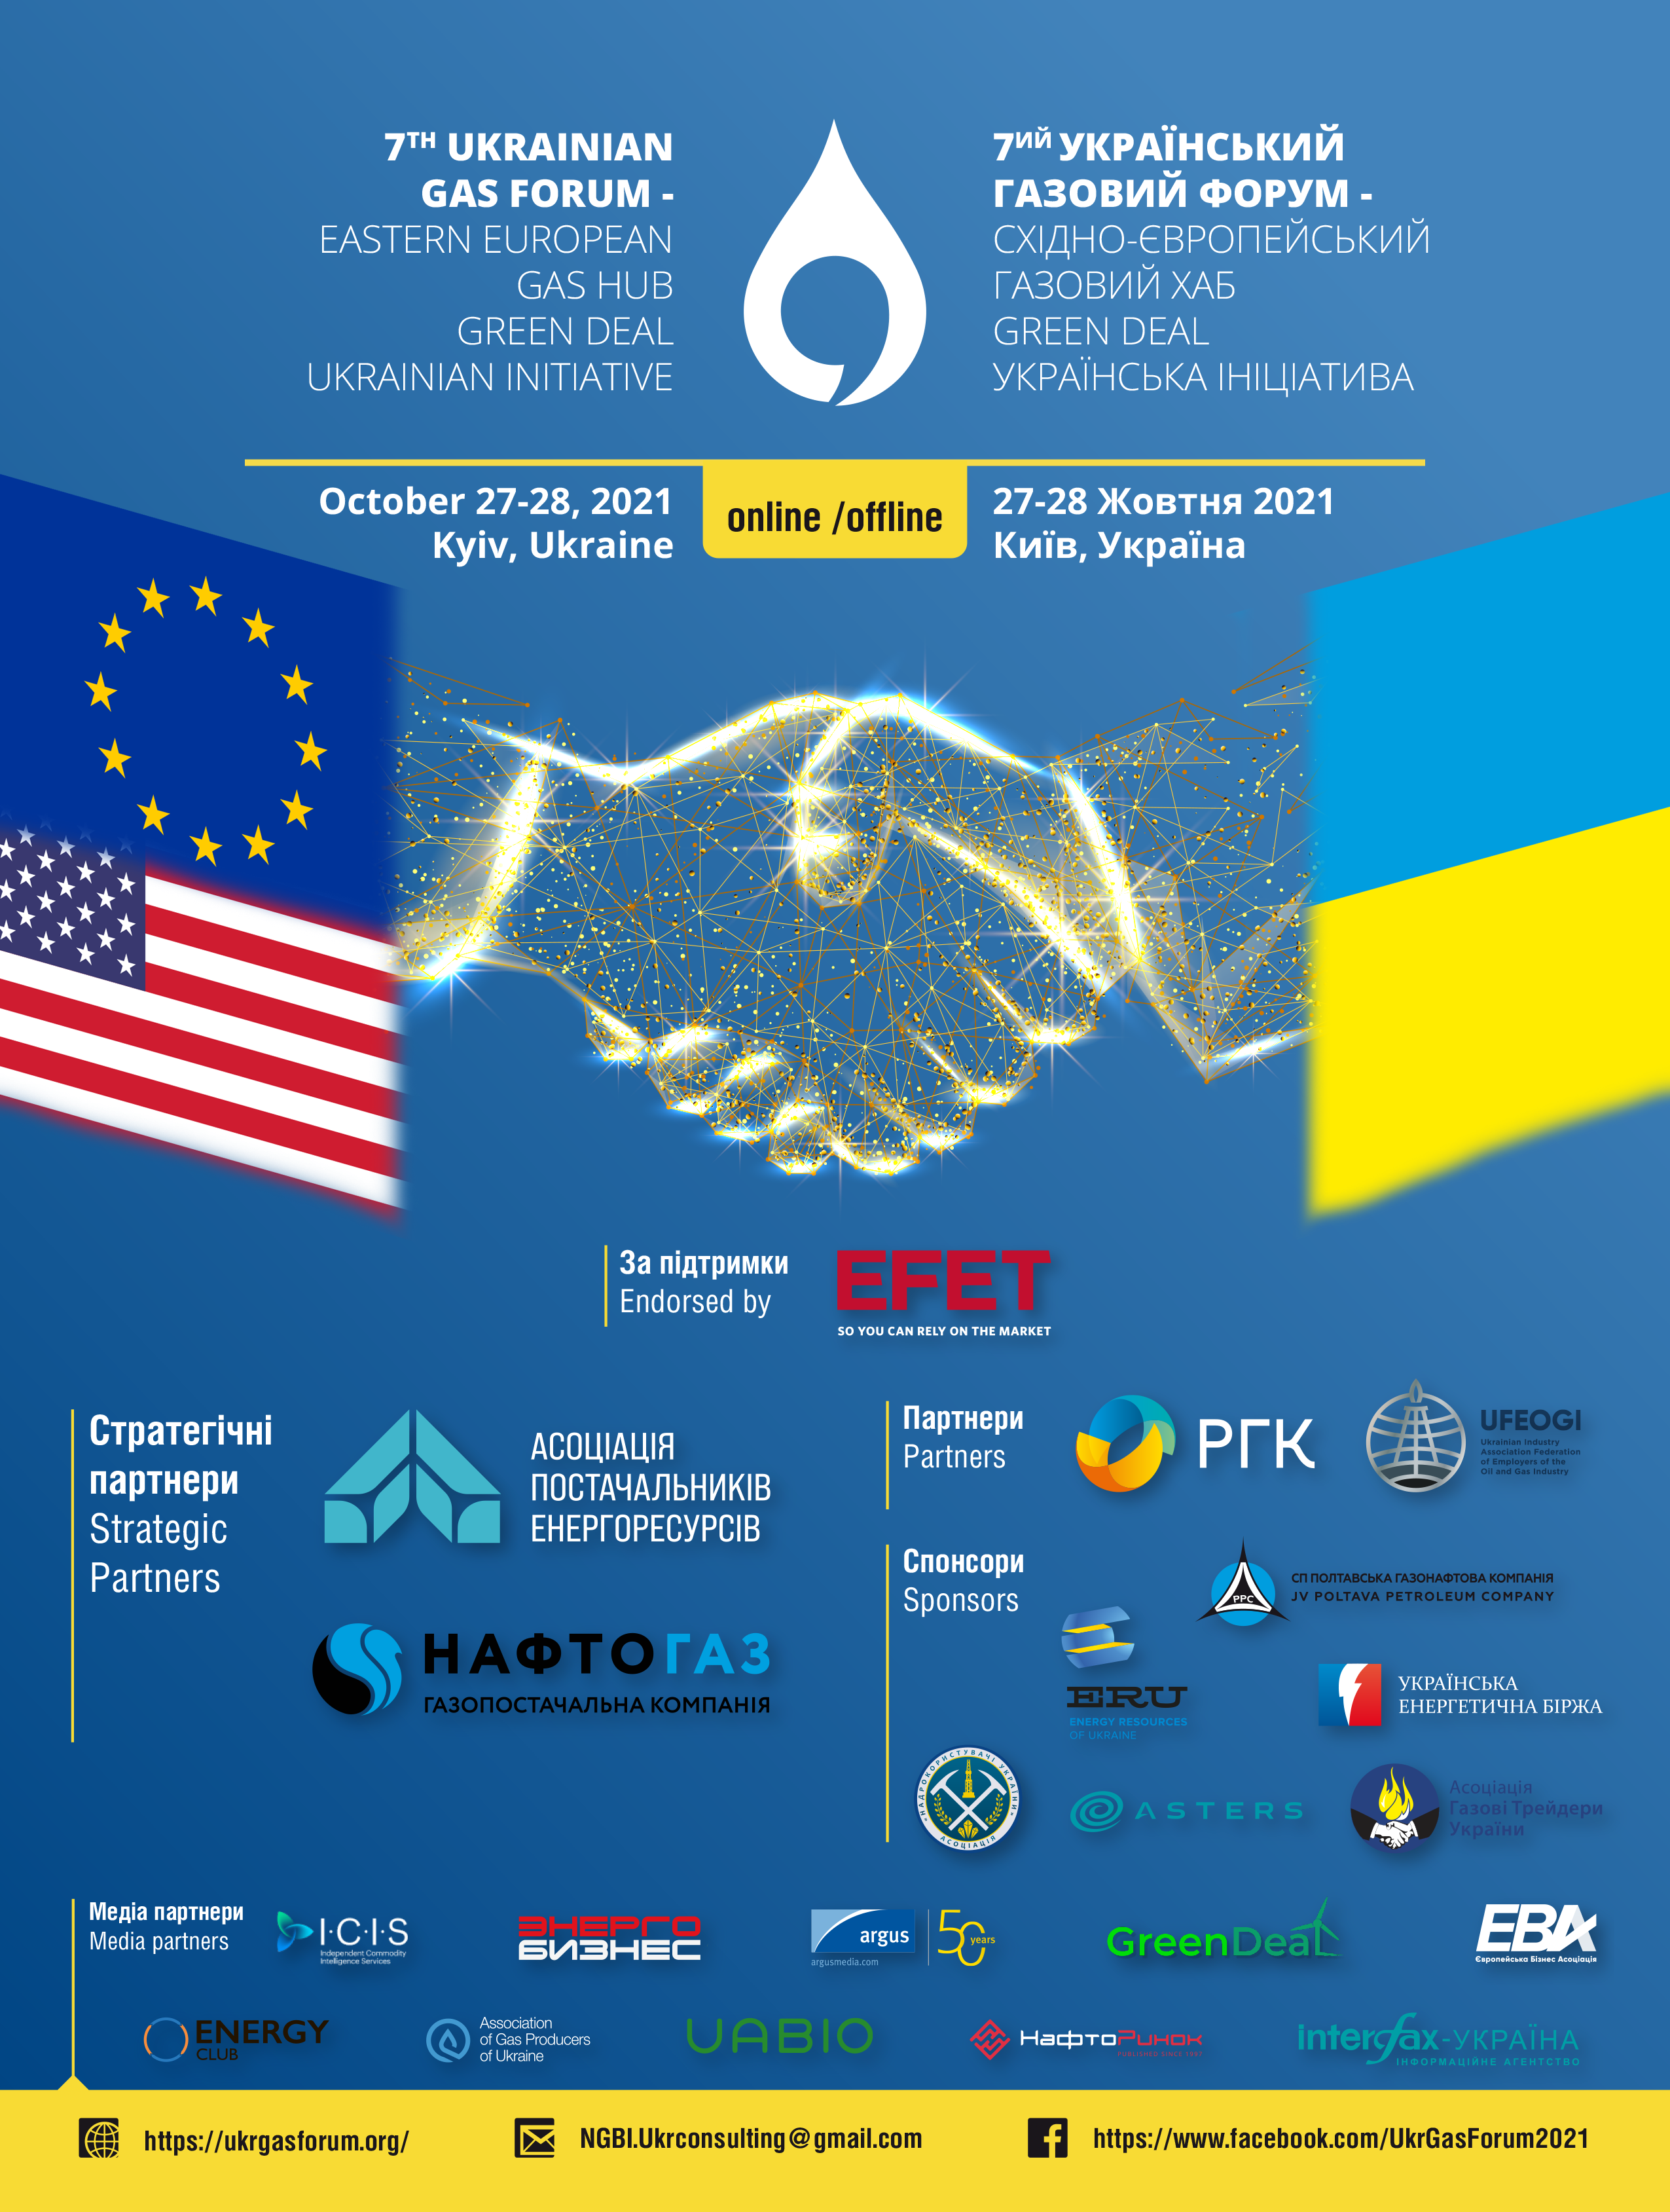 Ukrainian gaz forum 2021